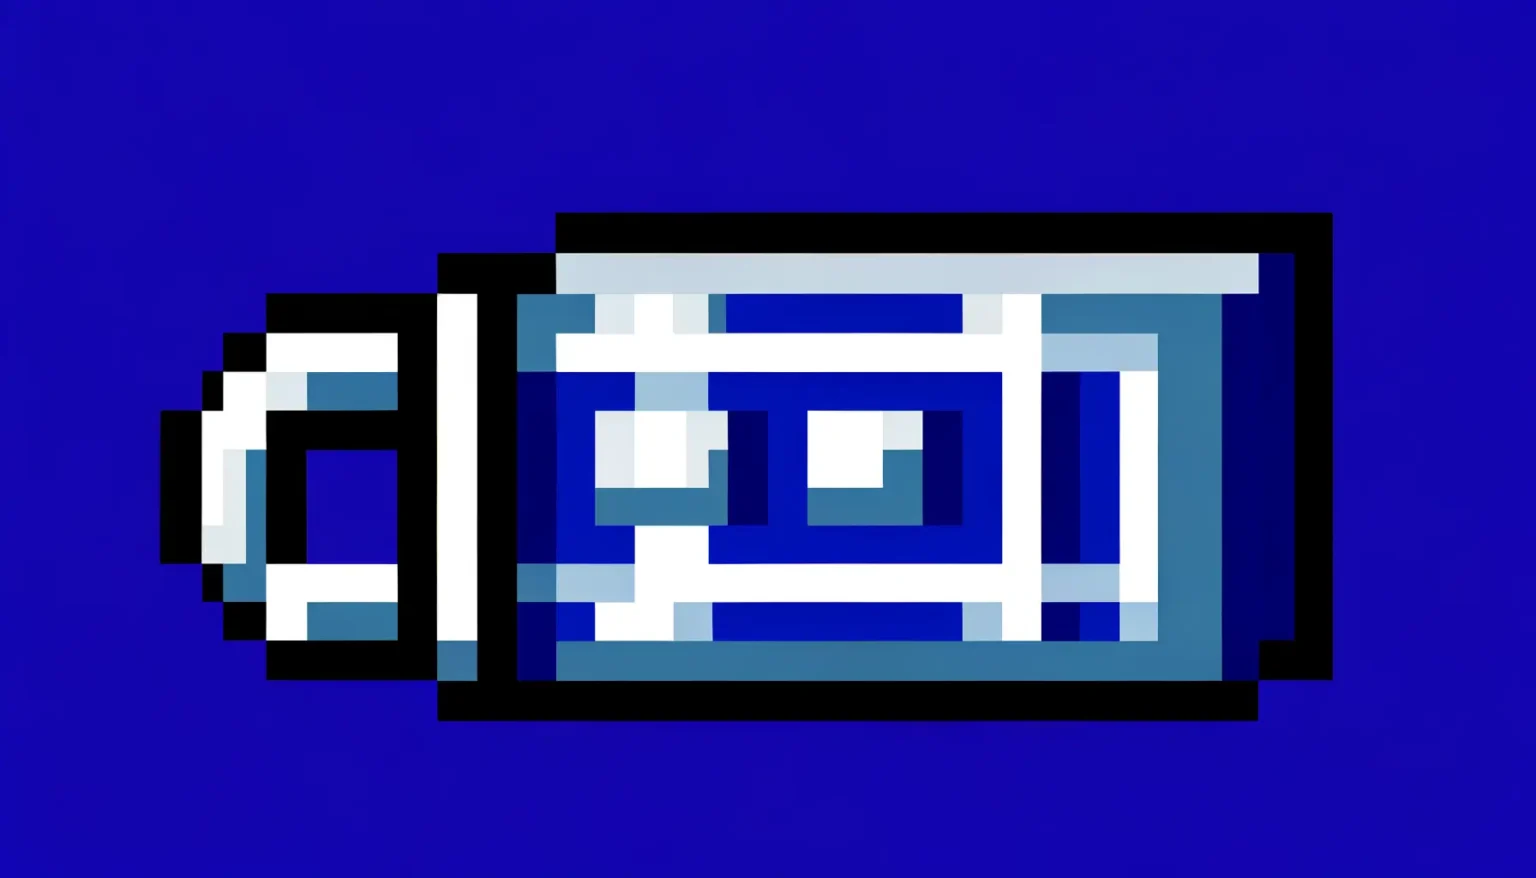 Ein stilisiertes, pixelartiges Bild einer Batterie vor einem einfarbigen blauen Hintergrund. Die Batterie ist hauptsächlich in verschiedenen Blautönen mit einigen weißen und schwarzen Details dargestellt, wodurch ein minimalistischer, ikonischer Look erzeugt wird.